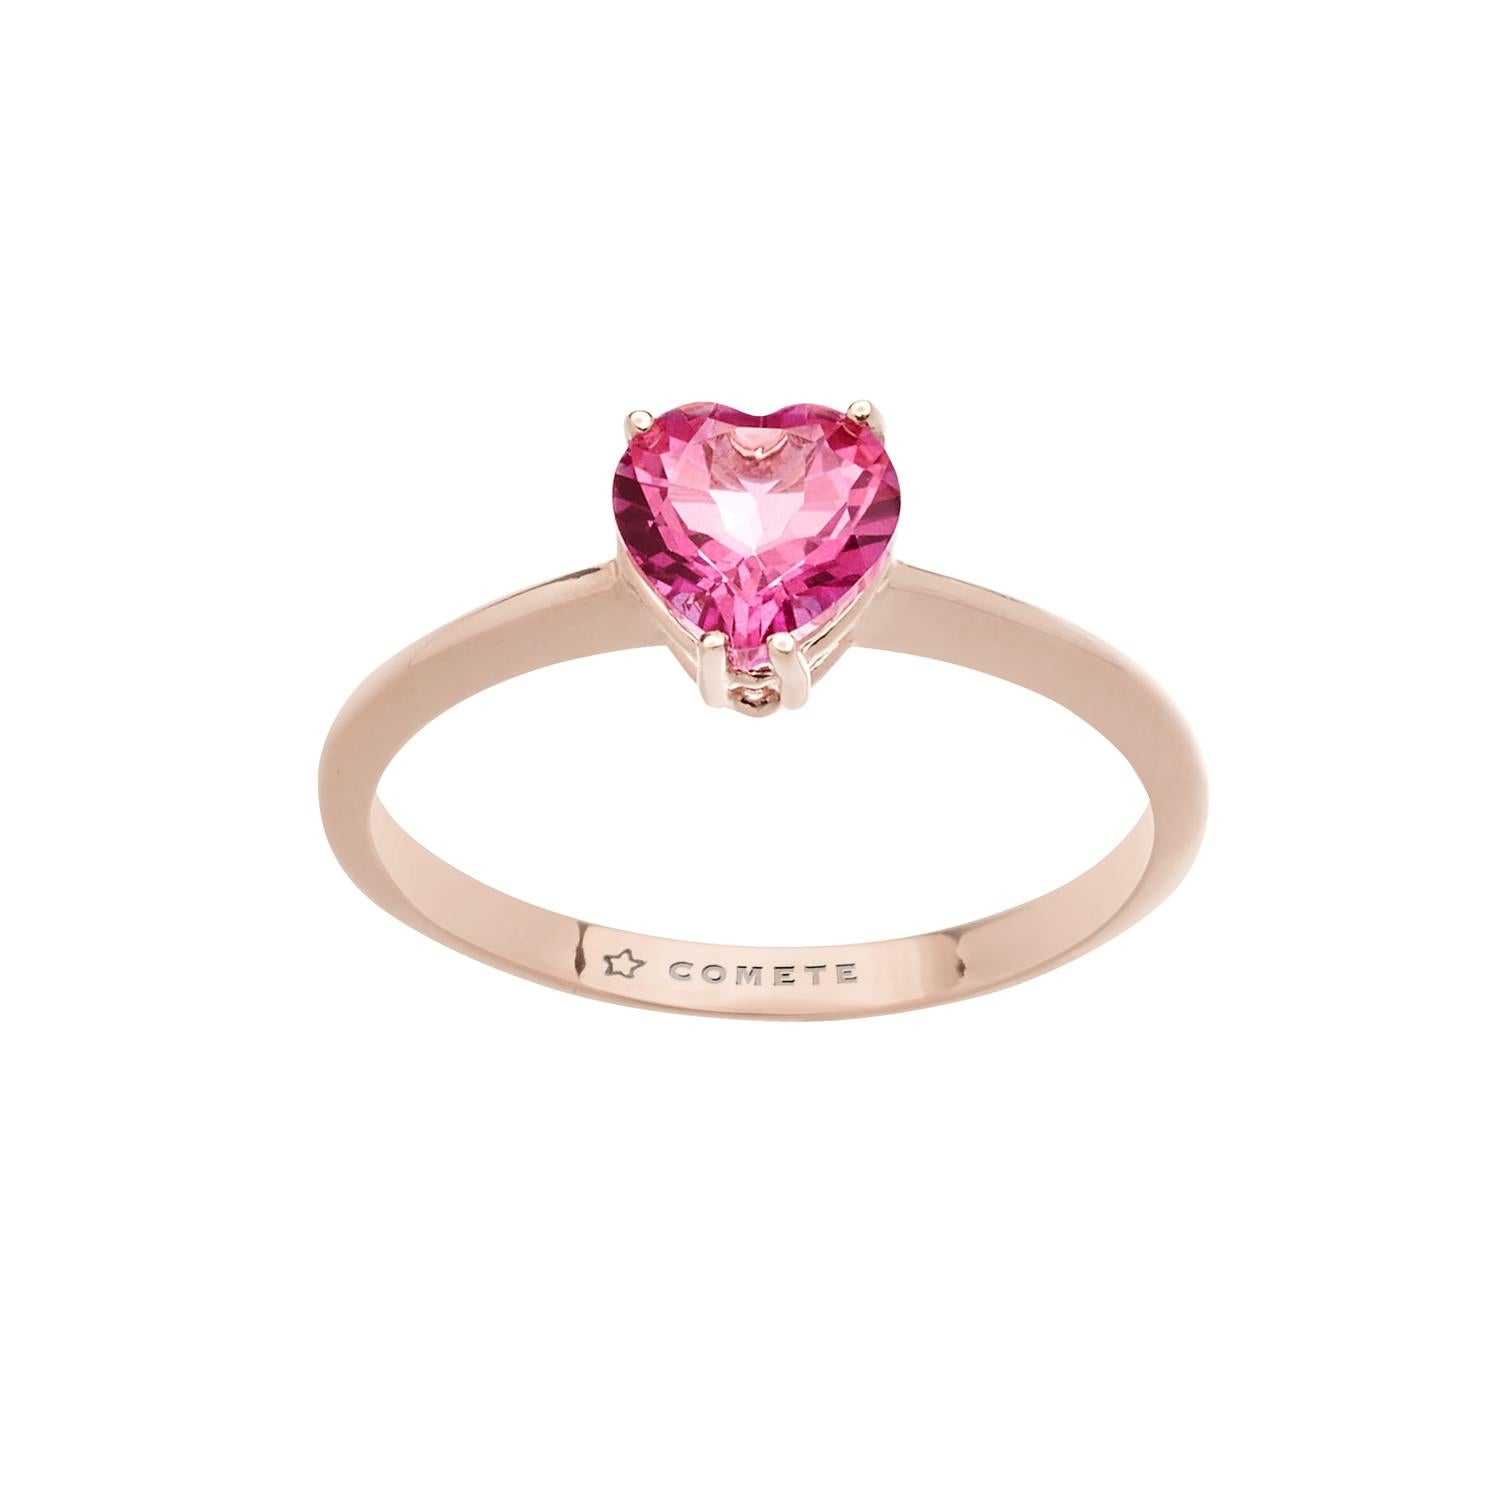 Collana COMETE GIOIELLI Fantasia di Topazio in oro con ciondolo cuore topazio rosa GLB 1548 - bonini-gioielli